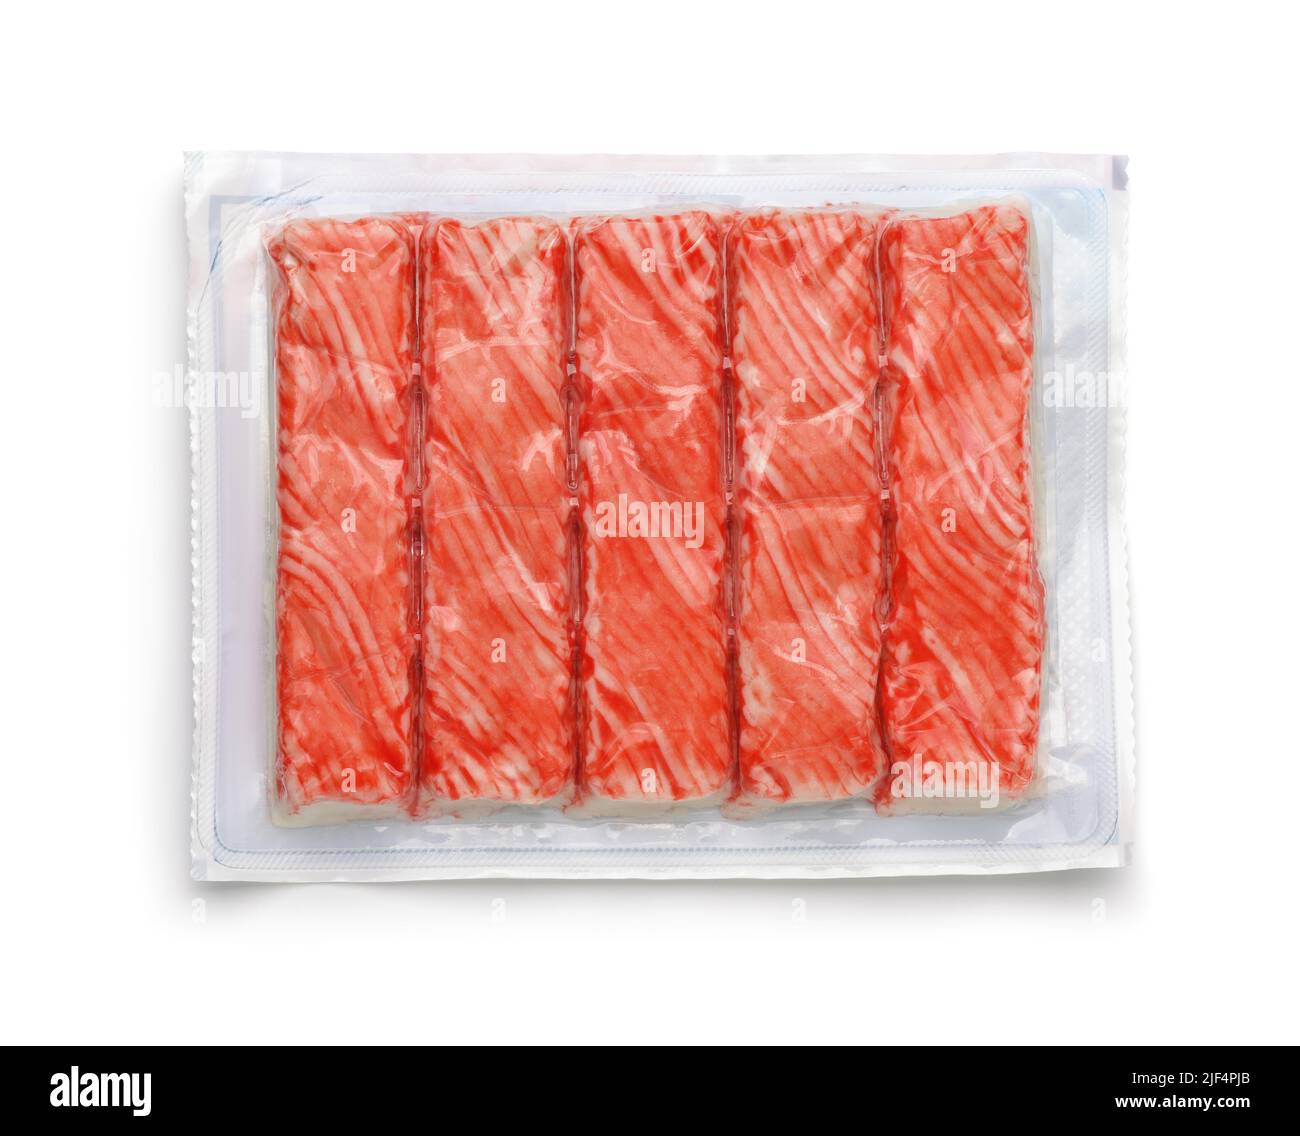 Vue de dessus des bâtonnets de crabe réfrigérés dans un emballage en plastique transparent isolé sur du blanc Banque D'Images